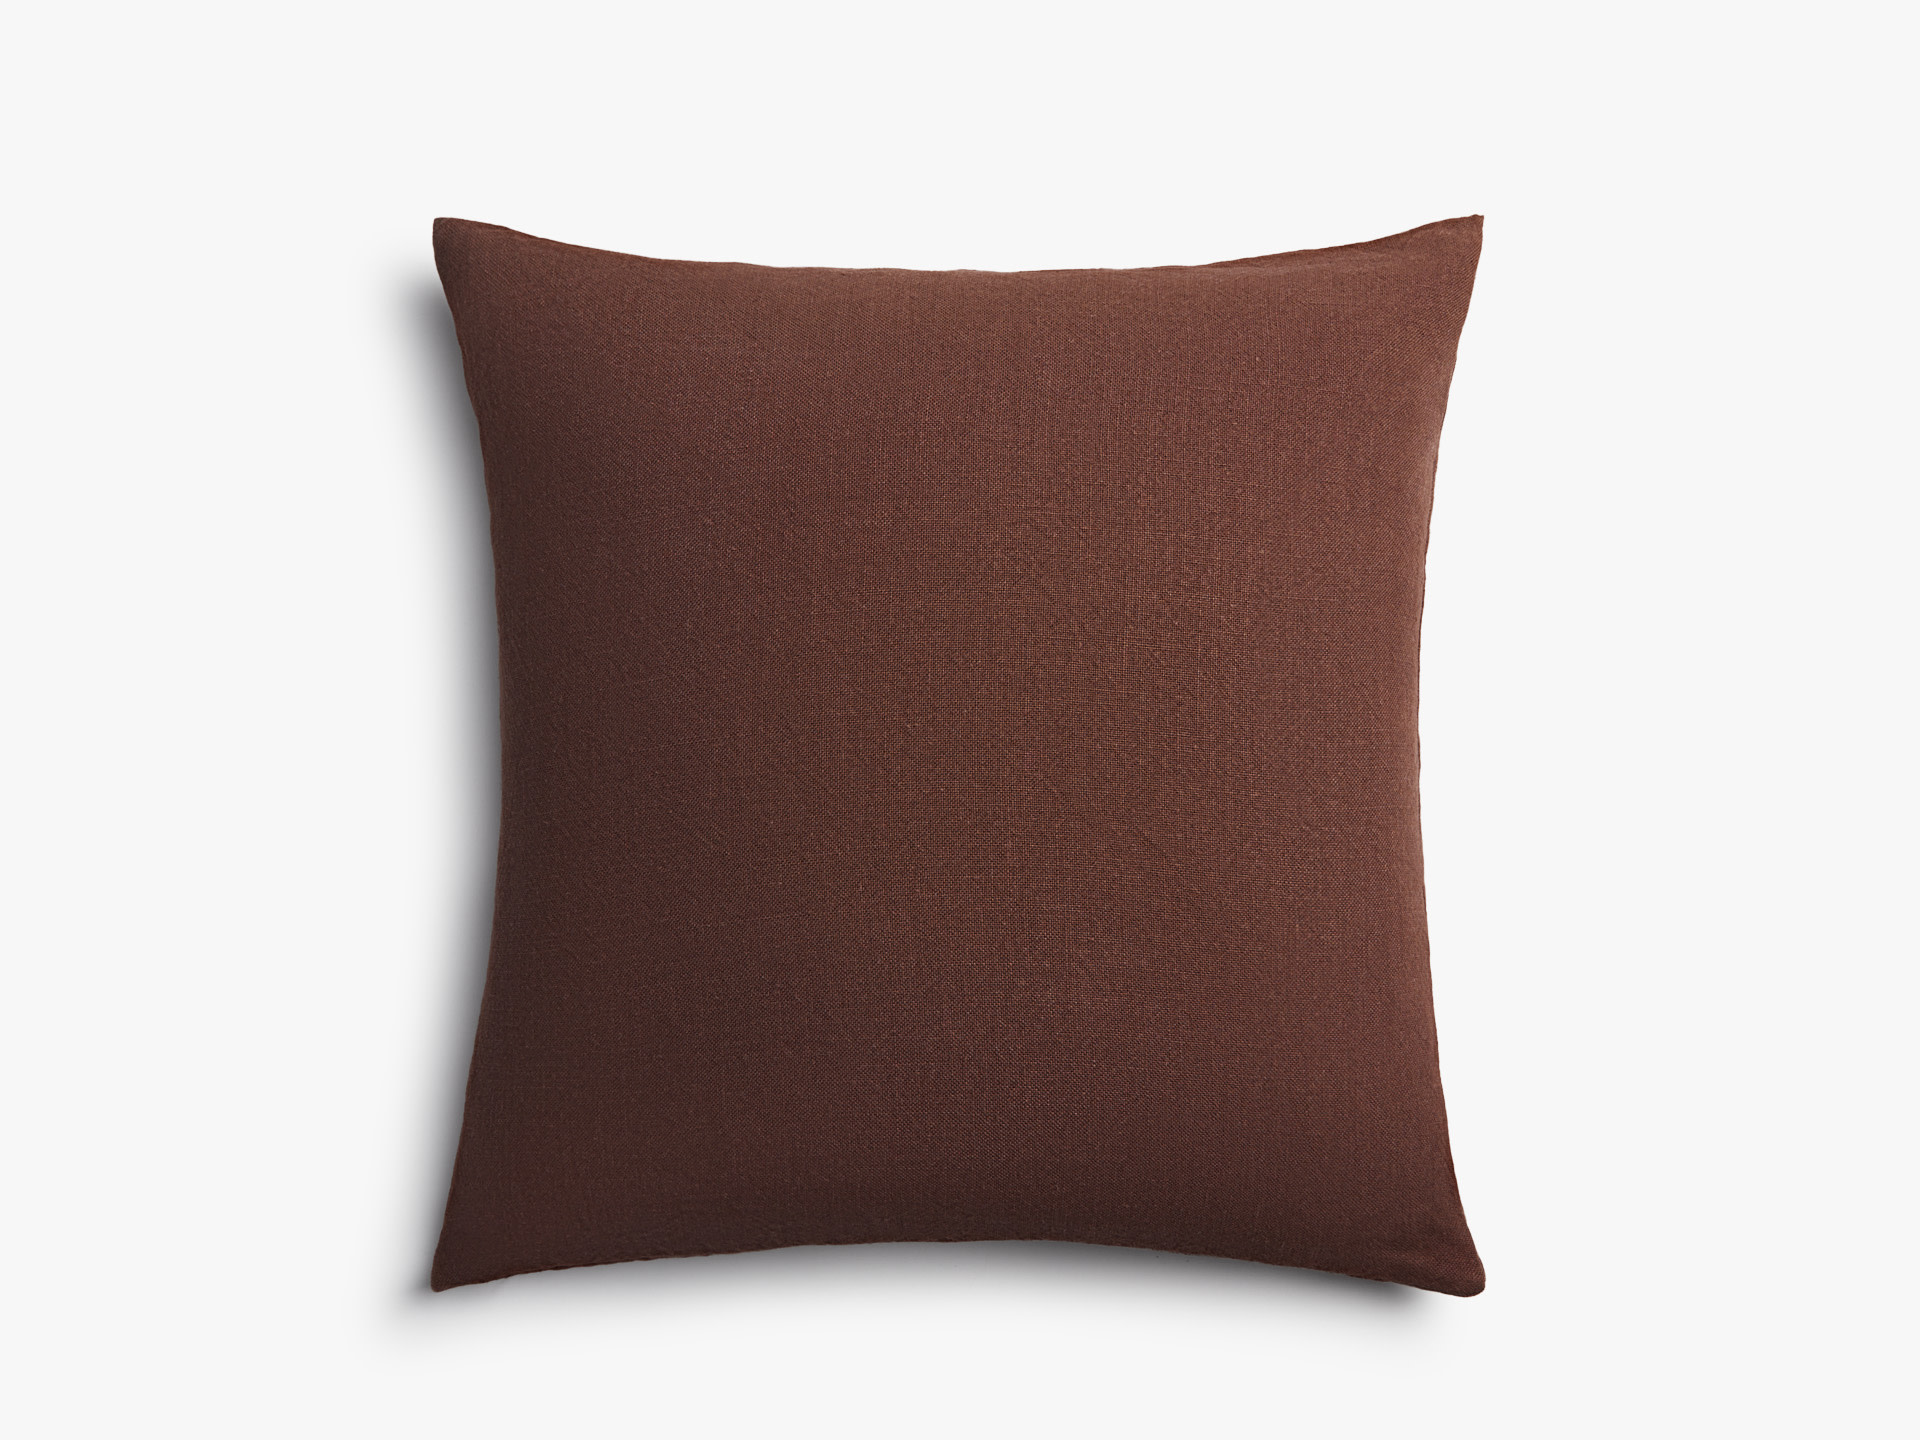 Raisin Vintage Linen Pillow Cover